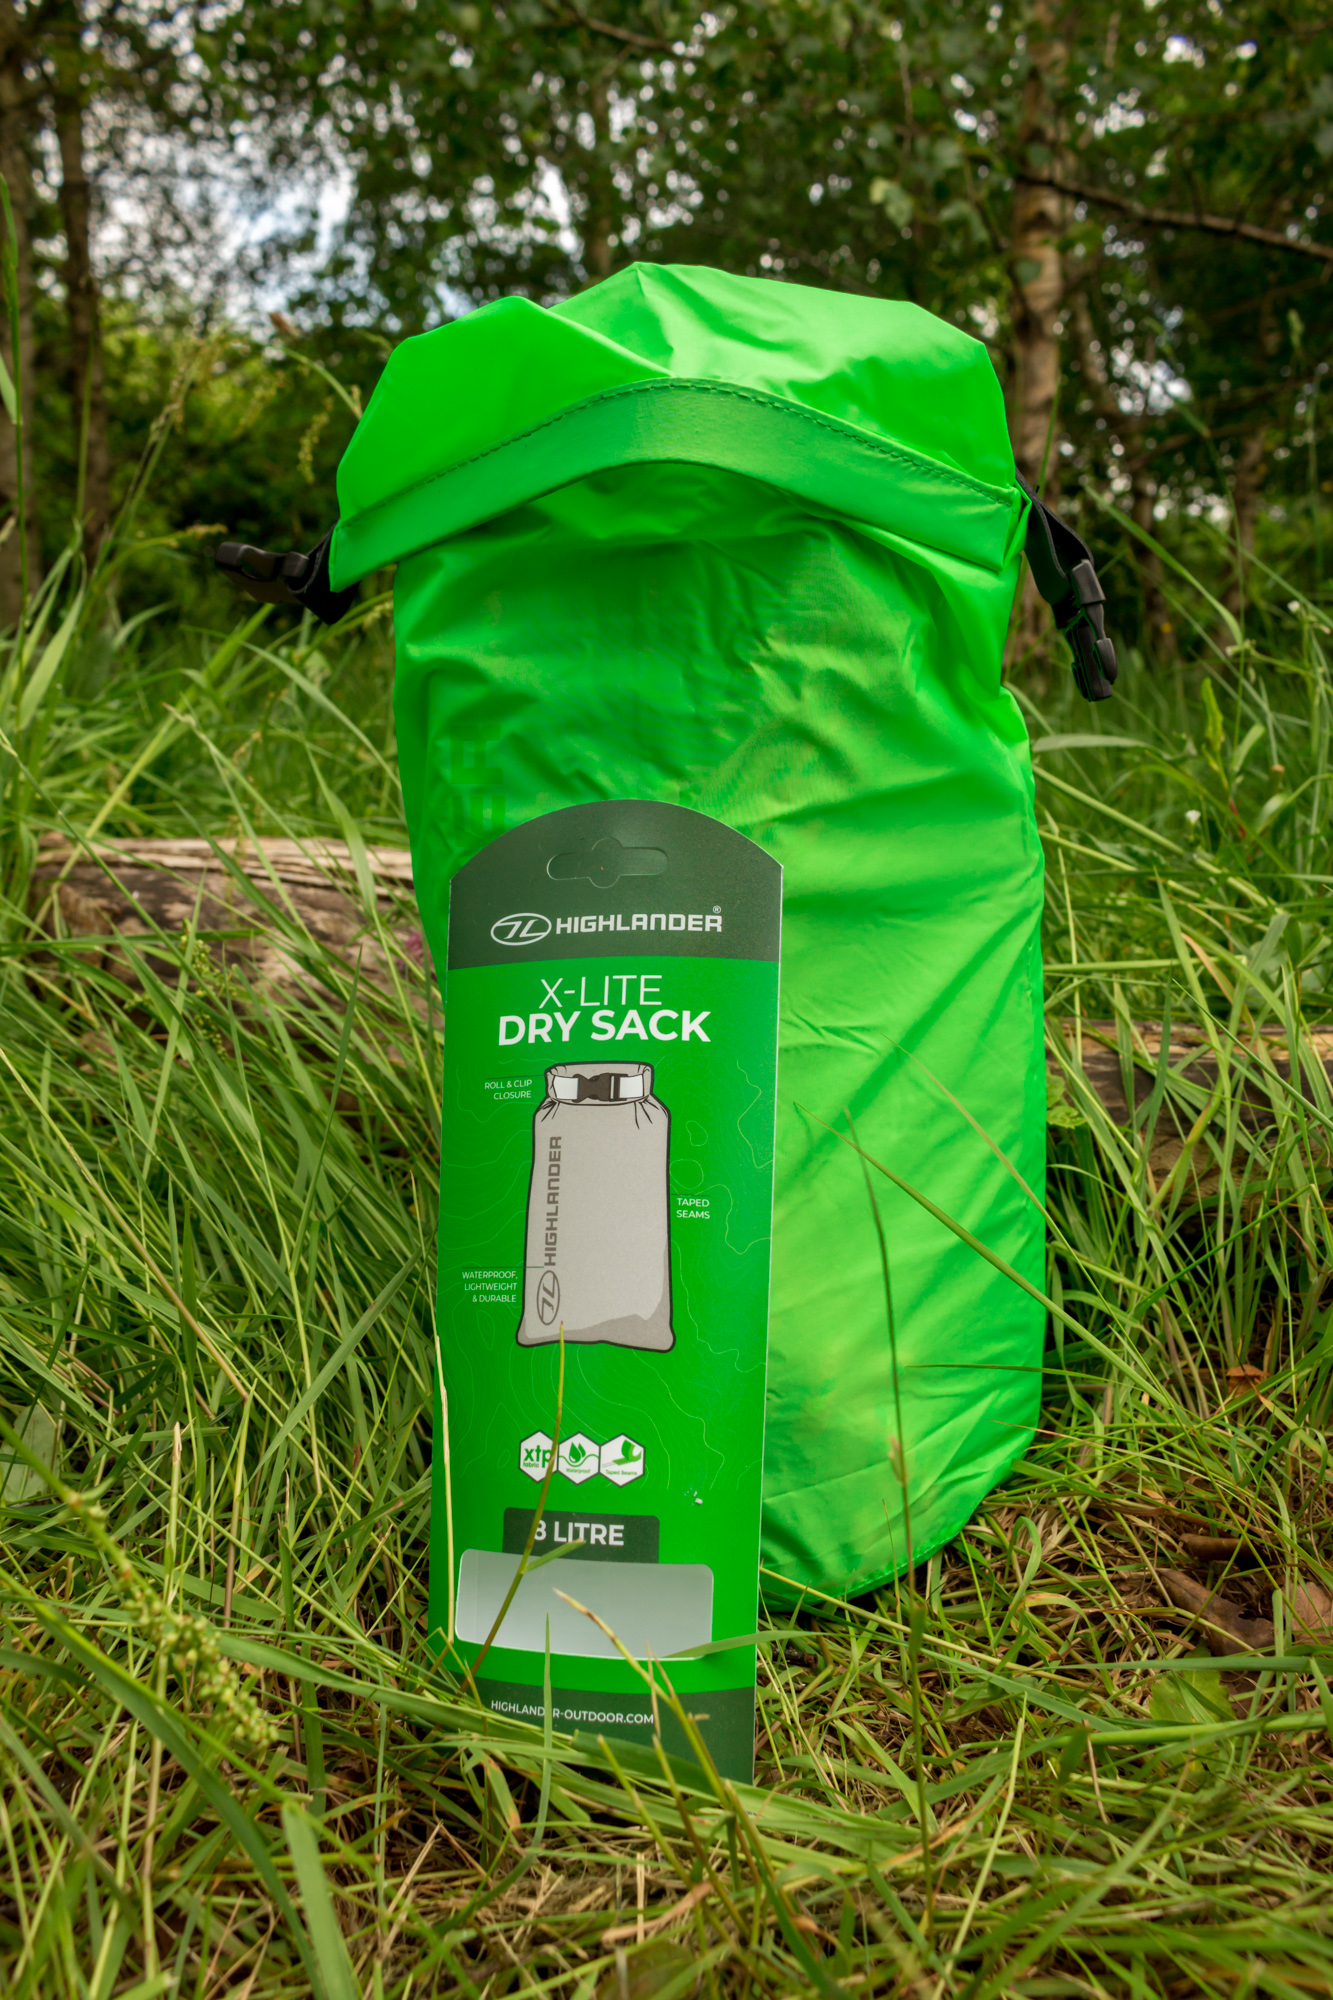 Highlander X-Lite Dry Sack Waterproof Roll top bags Green. 